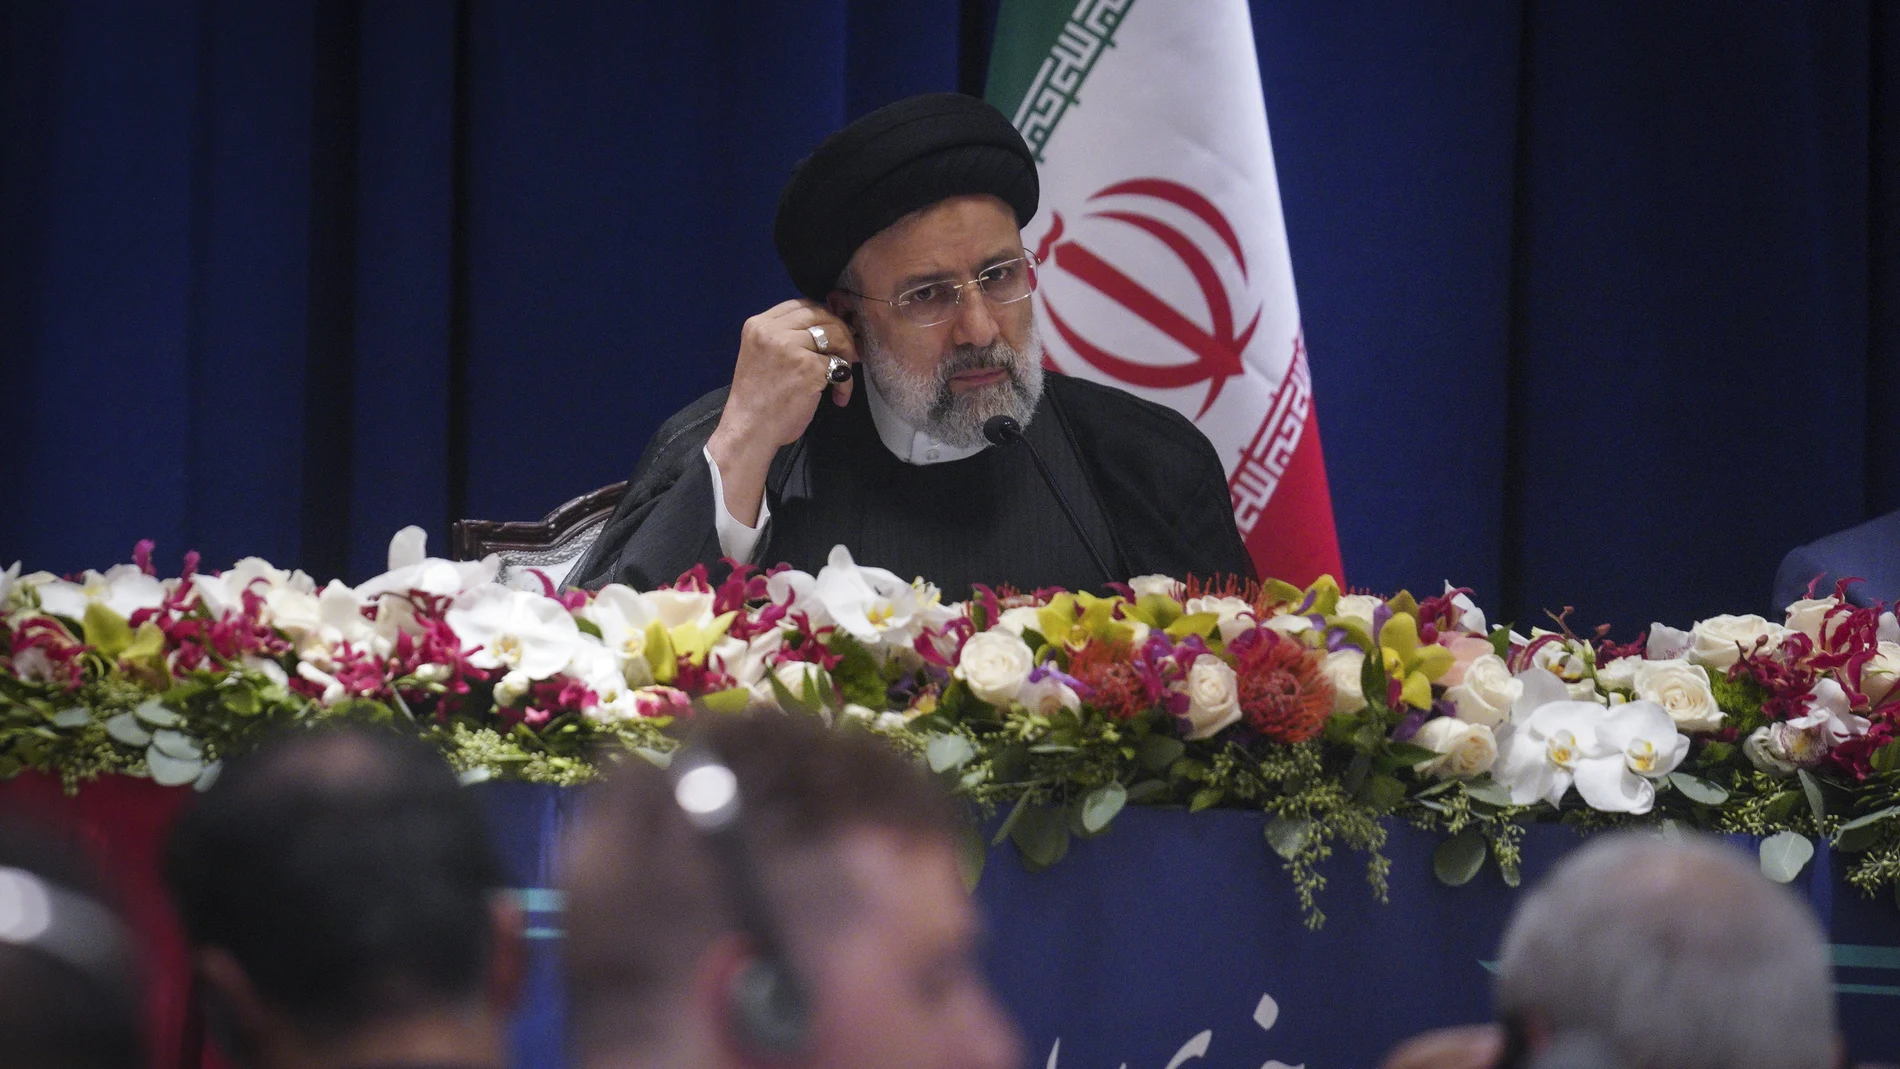 El presidente de Irán, Ebrahim Raisi, escucha durante una conferencia de prensa sobre su visita a la Asamblea General de las Naciones Unidas, el jueves 22 de septiembre de 2022, en la sede de la ONU. (Foto AP/Bebeto Matthews)